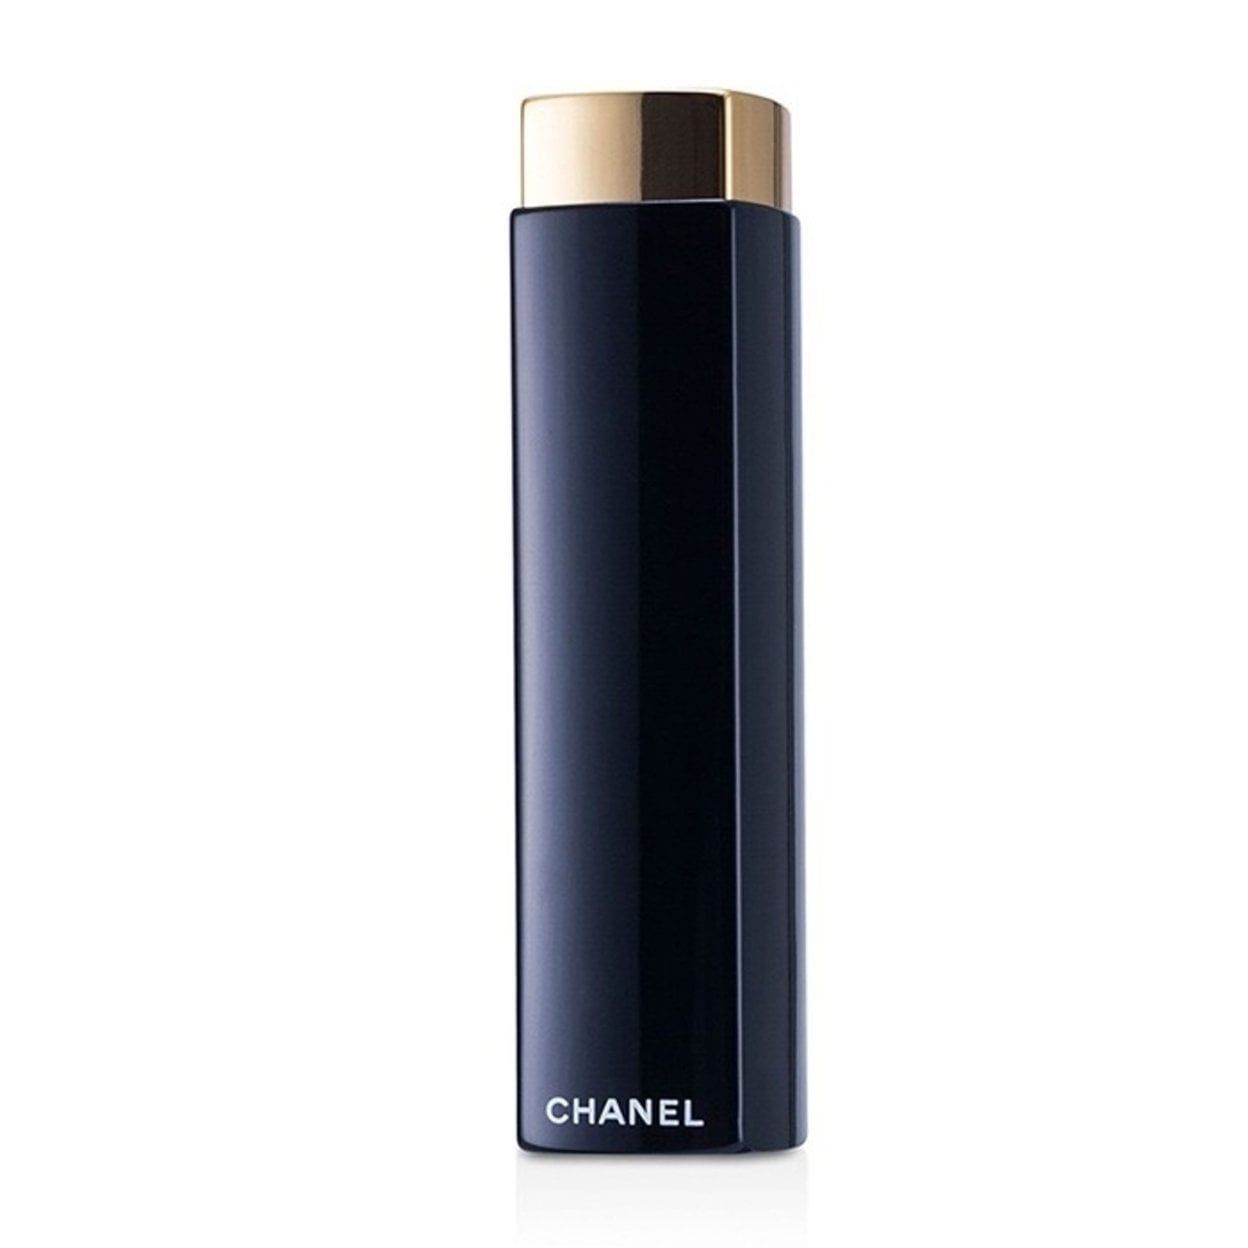 Chanel Rouge Allure Luminous Intense Lip Colour - # 91 Seduisante  3.5g/0.12oz 